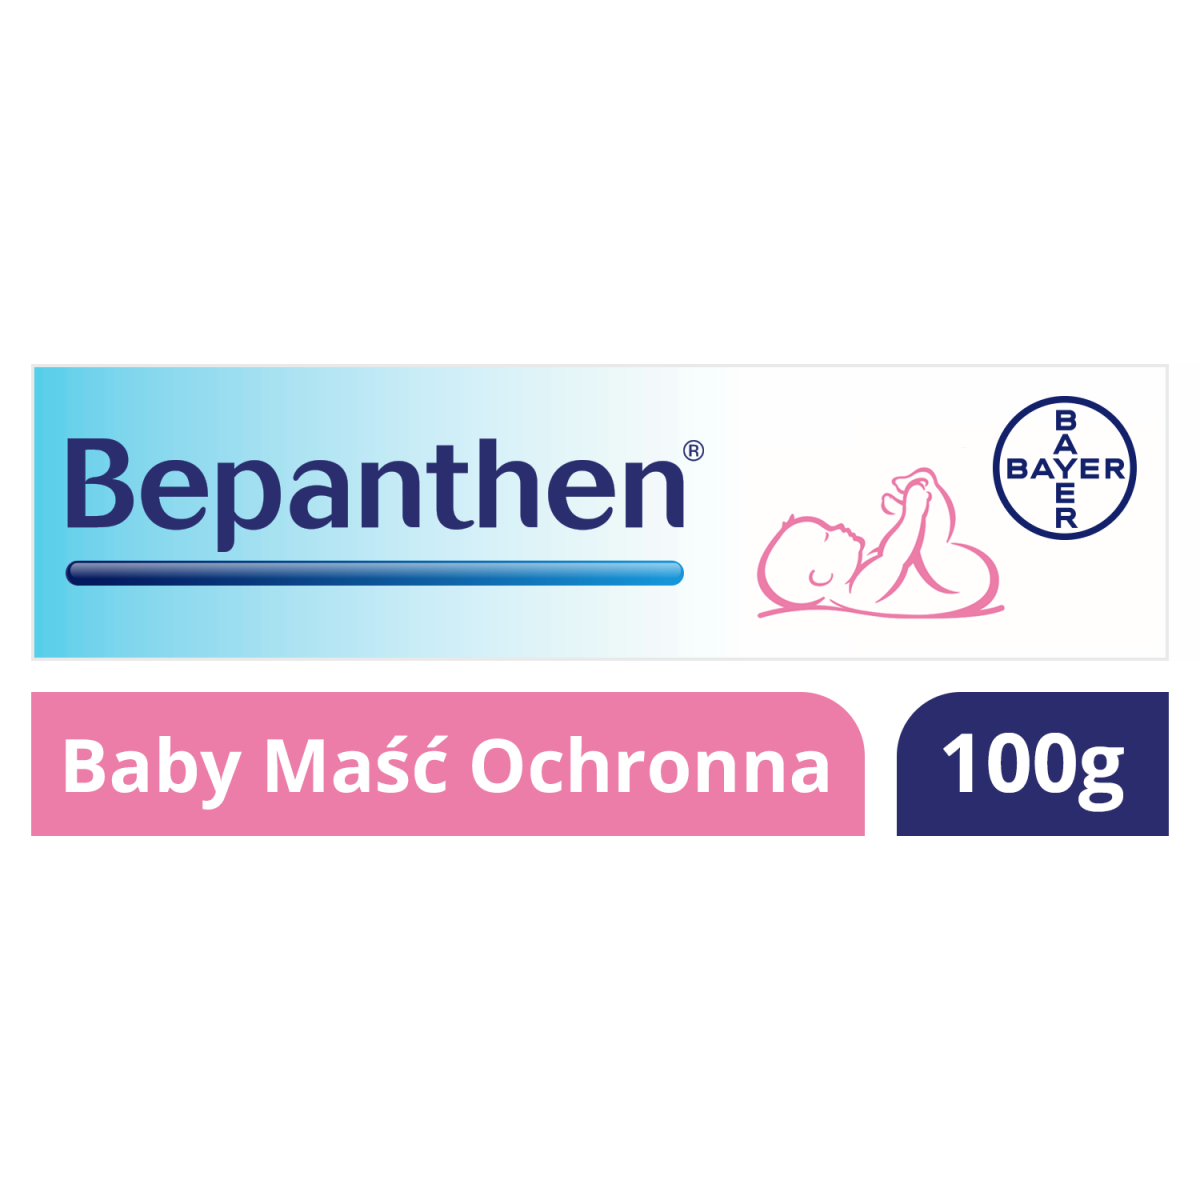 Bepanthen Baby Maść ochronna 100g